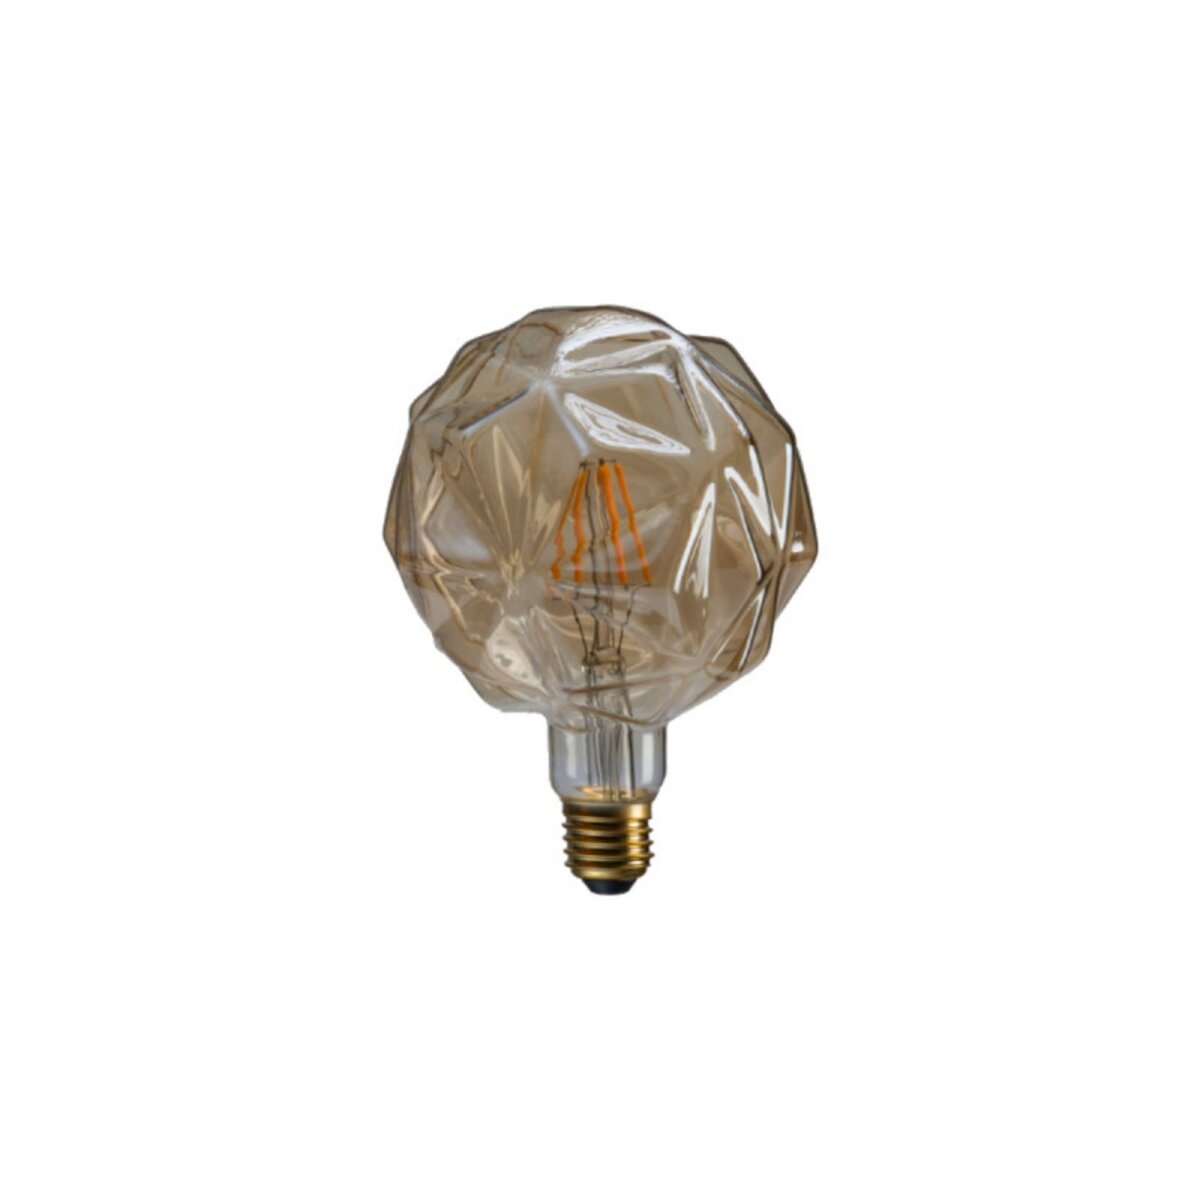  Ampoule LED rétro décorative ambrée XXCELL - 7 W - 720 lumens - 2700 K - E27